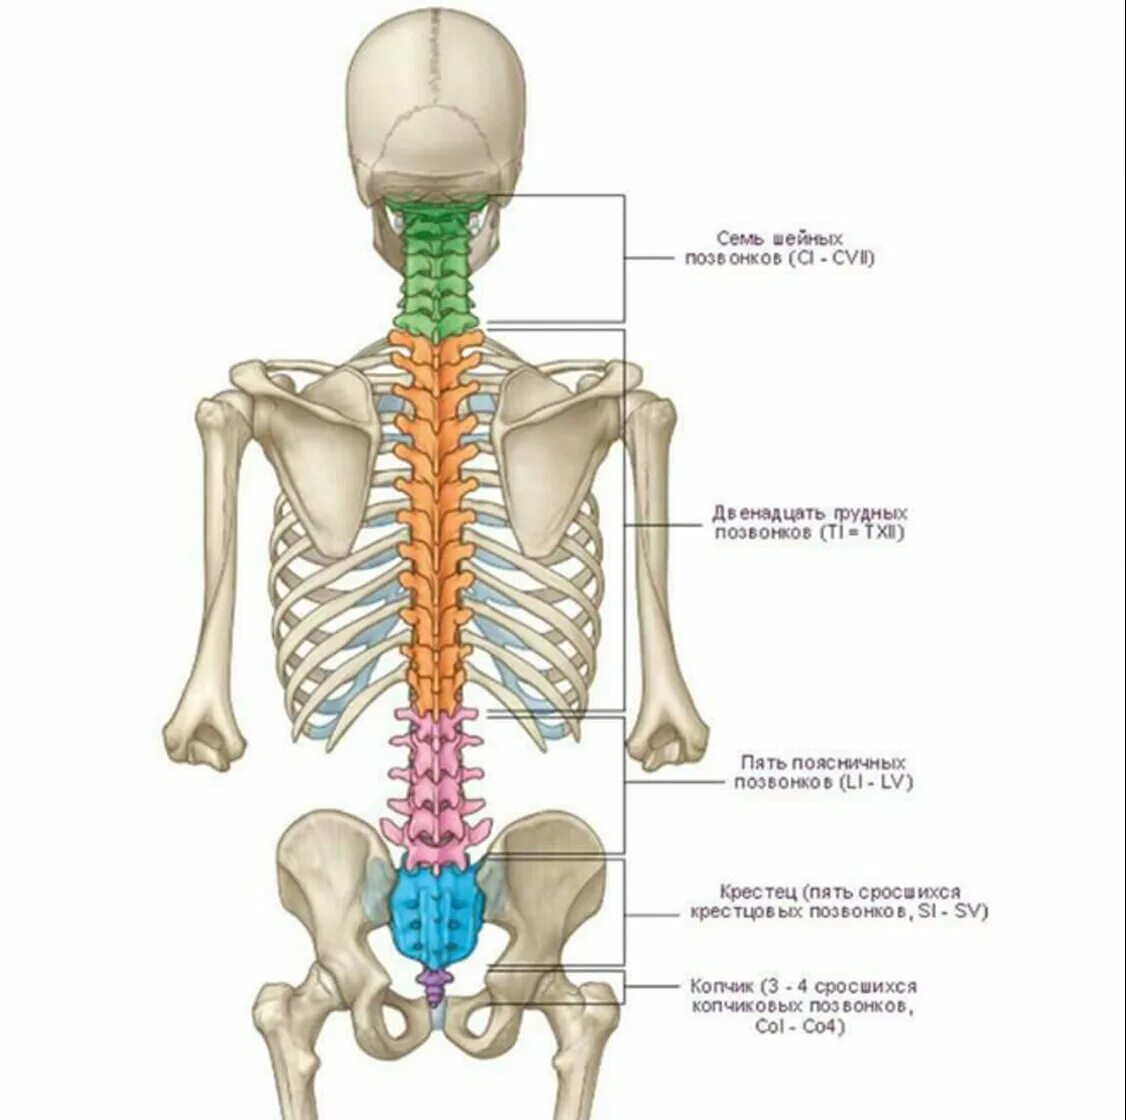 Нижняя часть поясницы. Анатомия человека кости скелета позвоночника. Анатомия костей поясничного отдела позвоночника. Отделы позвоночника человека на скелете человека.